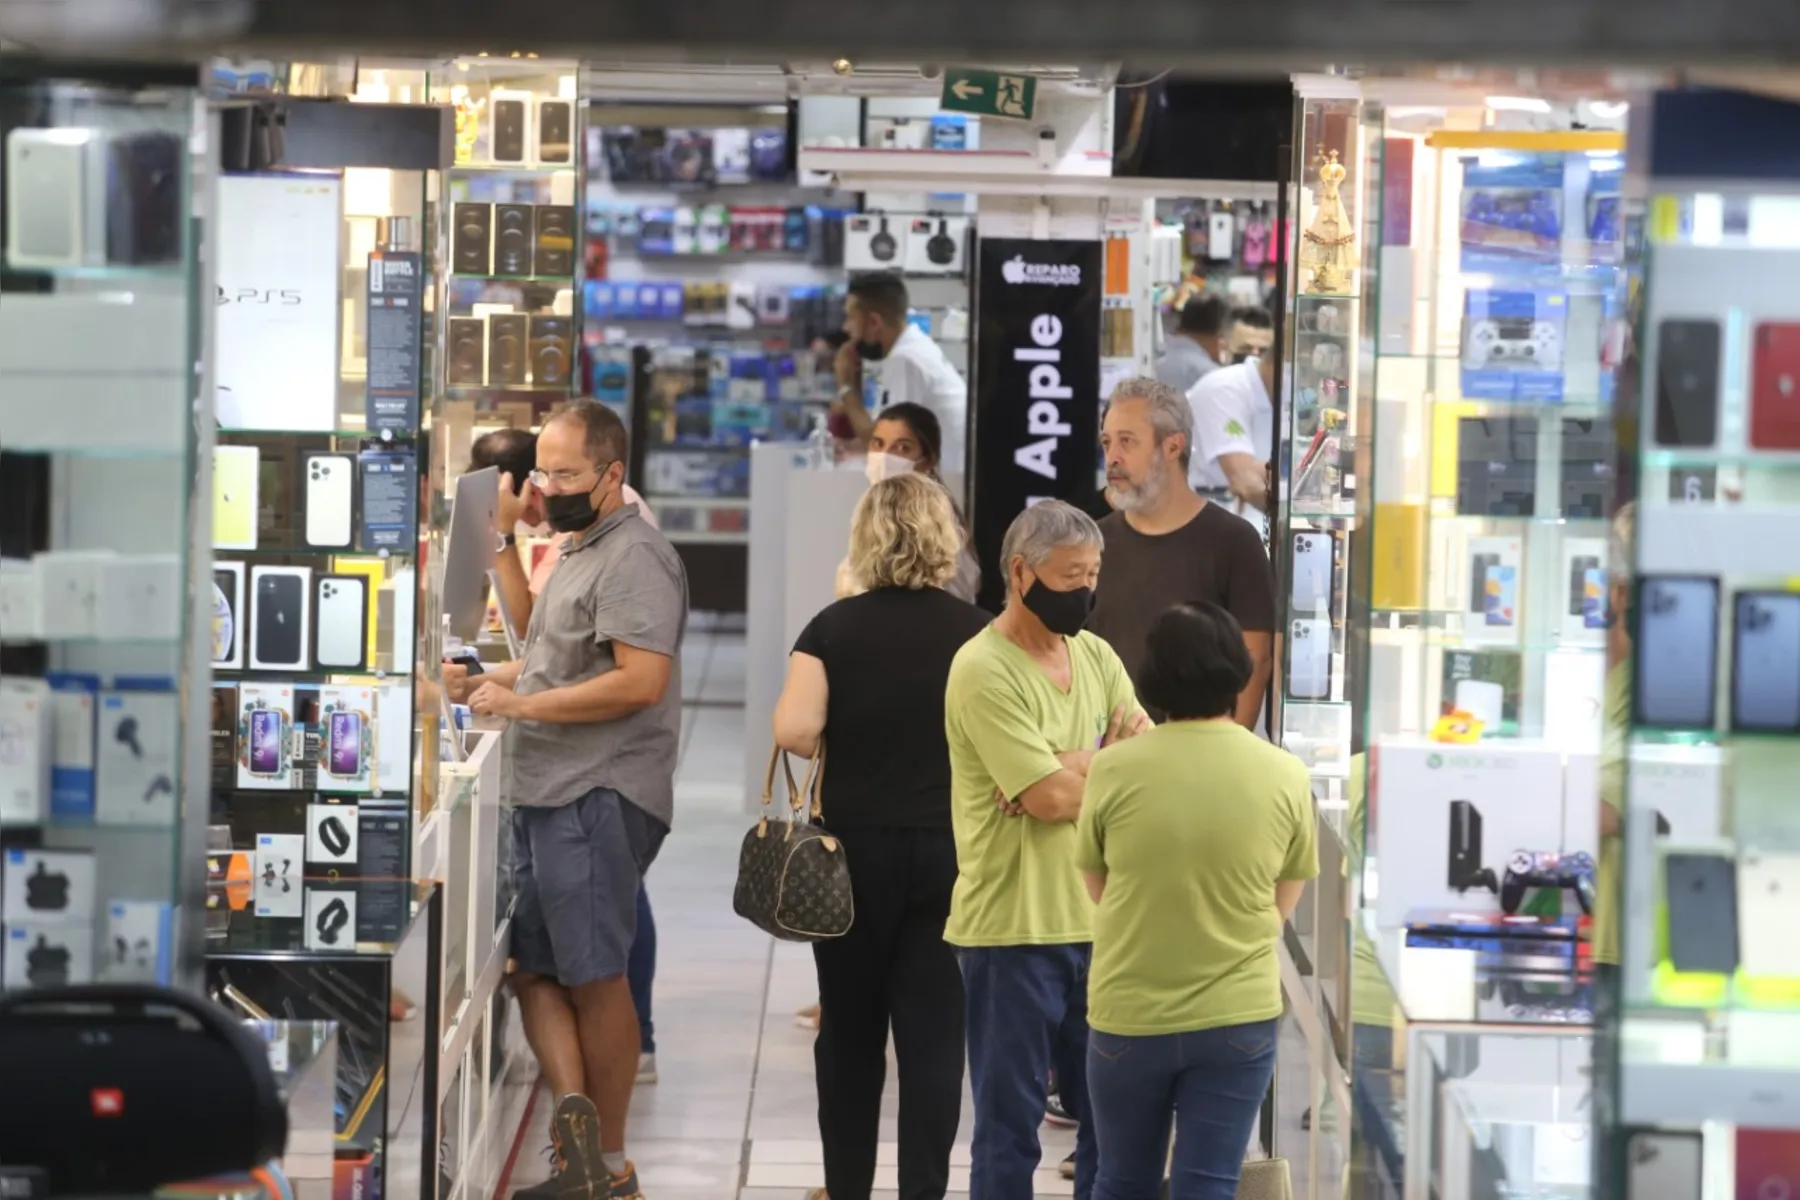 Na tarde de terça-feira (29), no comércio de Londrina, o decreto do governo já estava em vigor, com pessoas sem máscaras fazendo compras